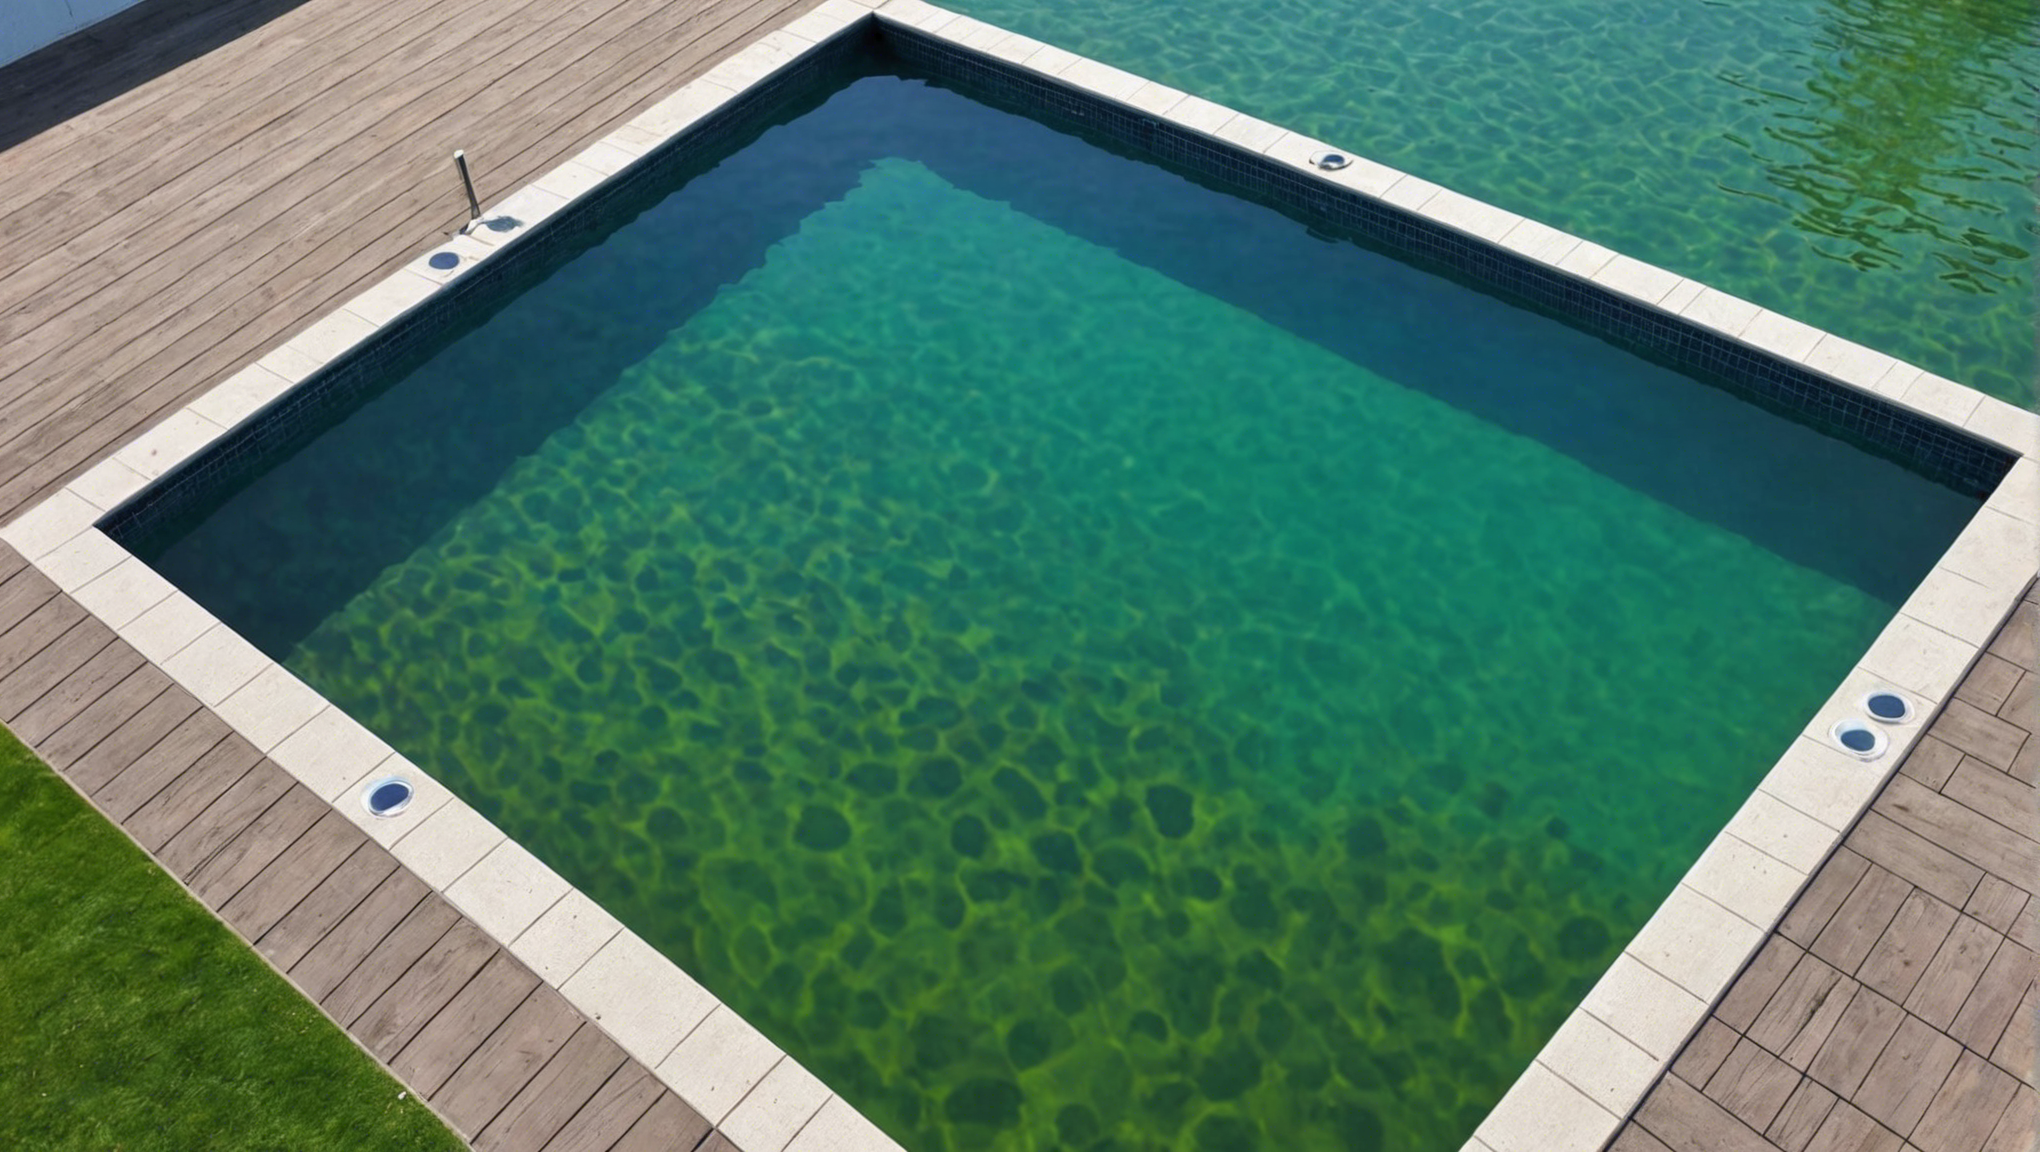 découvrez si vous pouvez vous baigner immédiatement dans une piscine traitée à l'anti-algues et les précautions à prendre pour une baignade en toute sécurité.